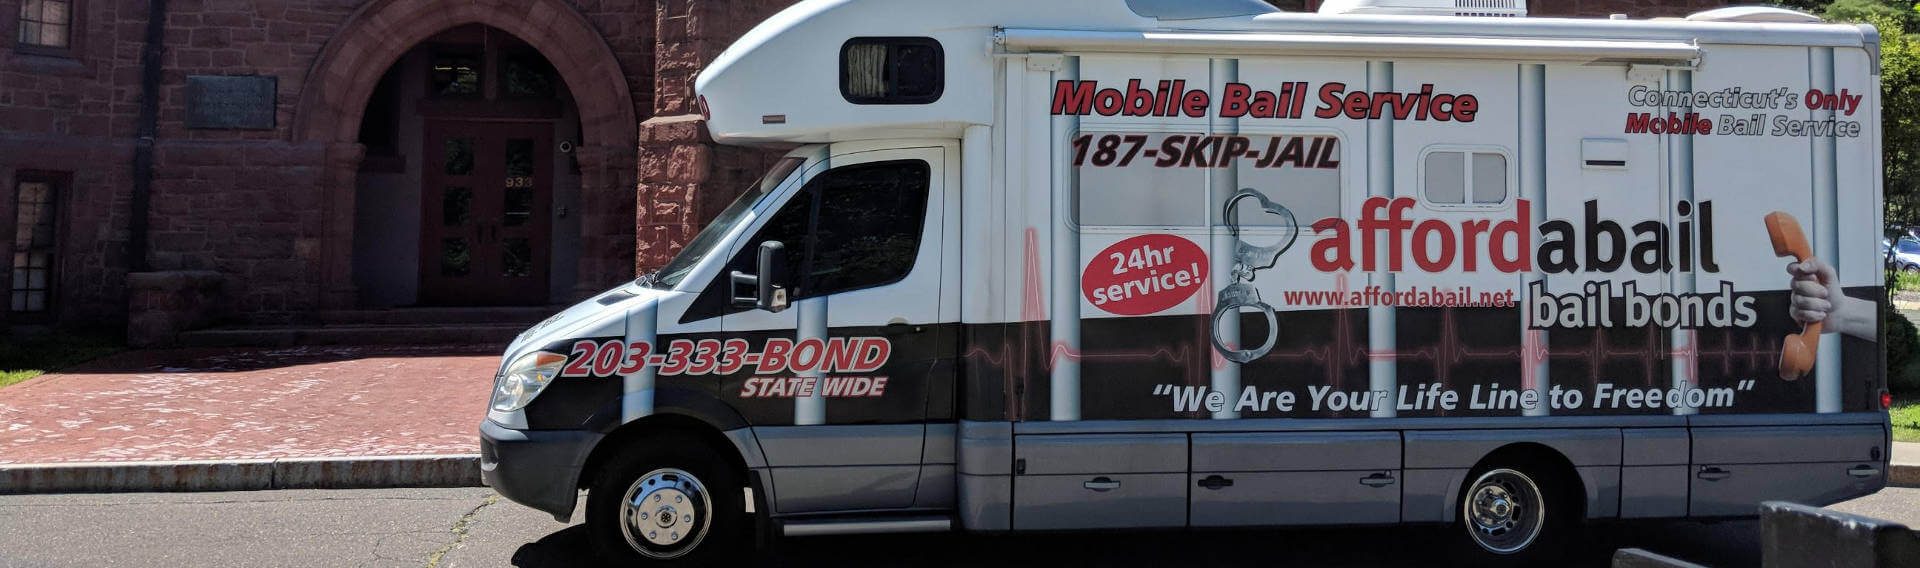 Mobile bail bonds service in Norwich CT